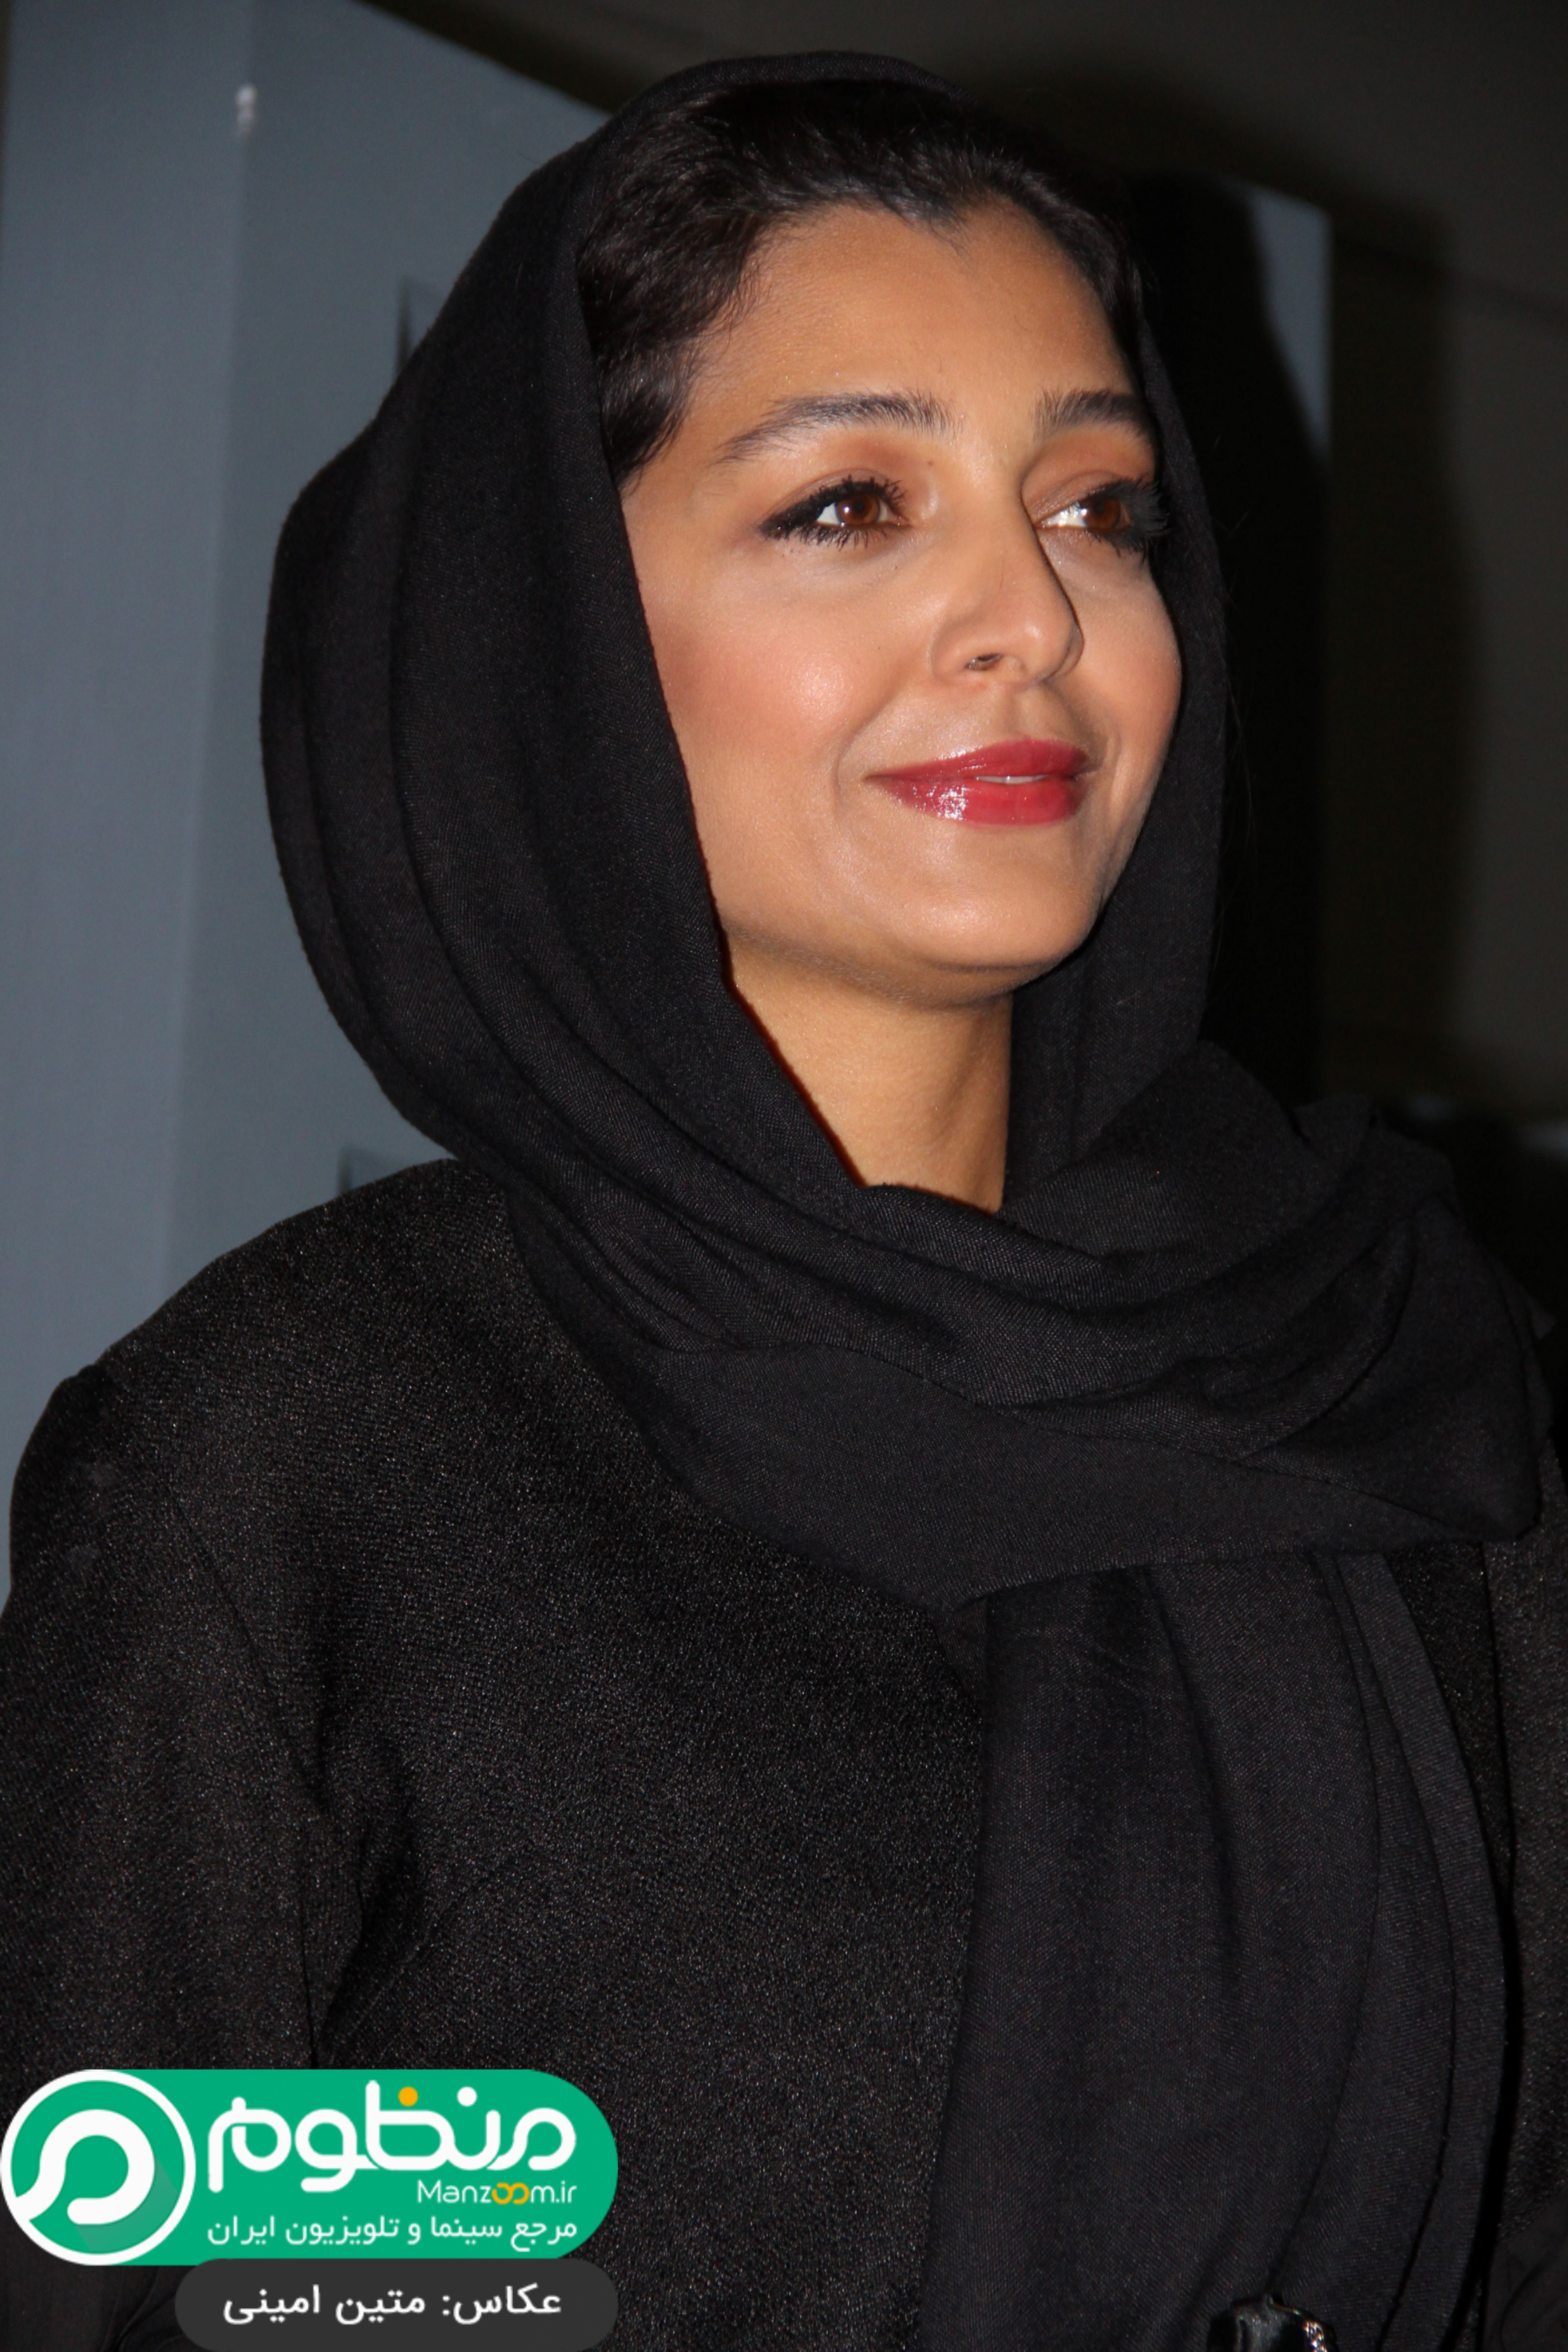 ساره بیات در اکران افتتاحیه فیلم سینمایی بیست و یک روز بعد